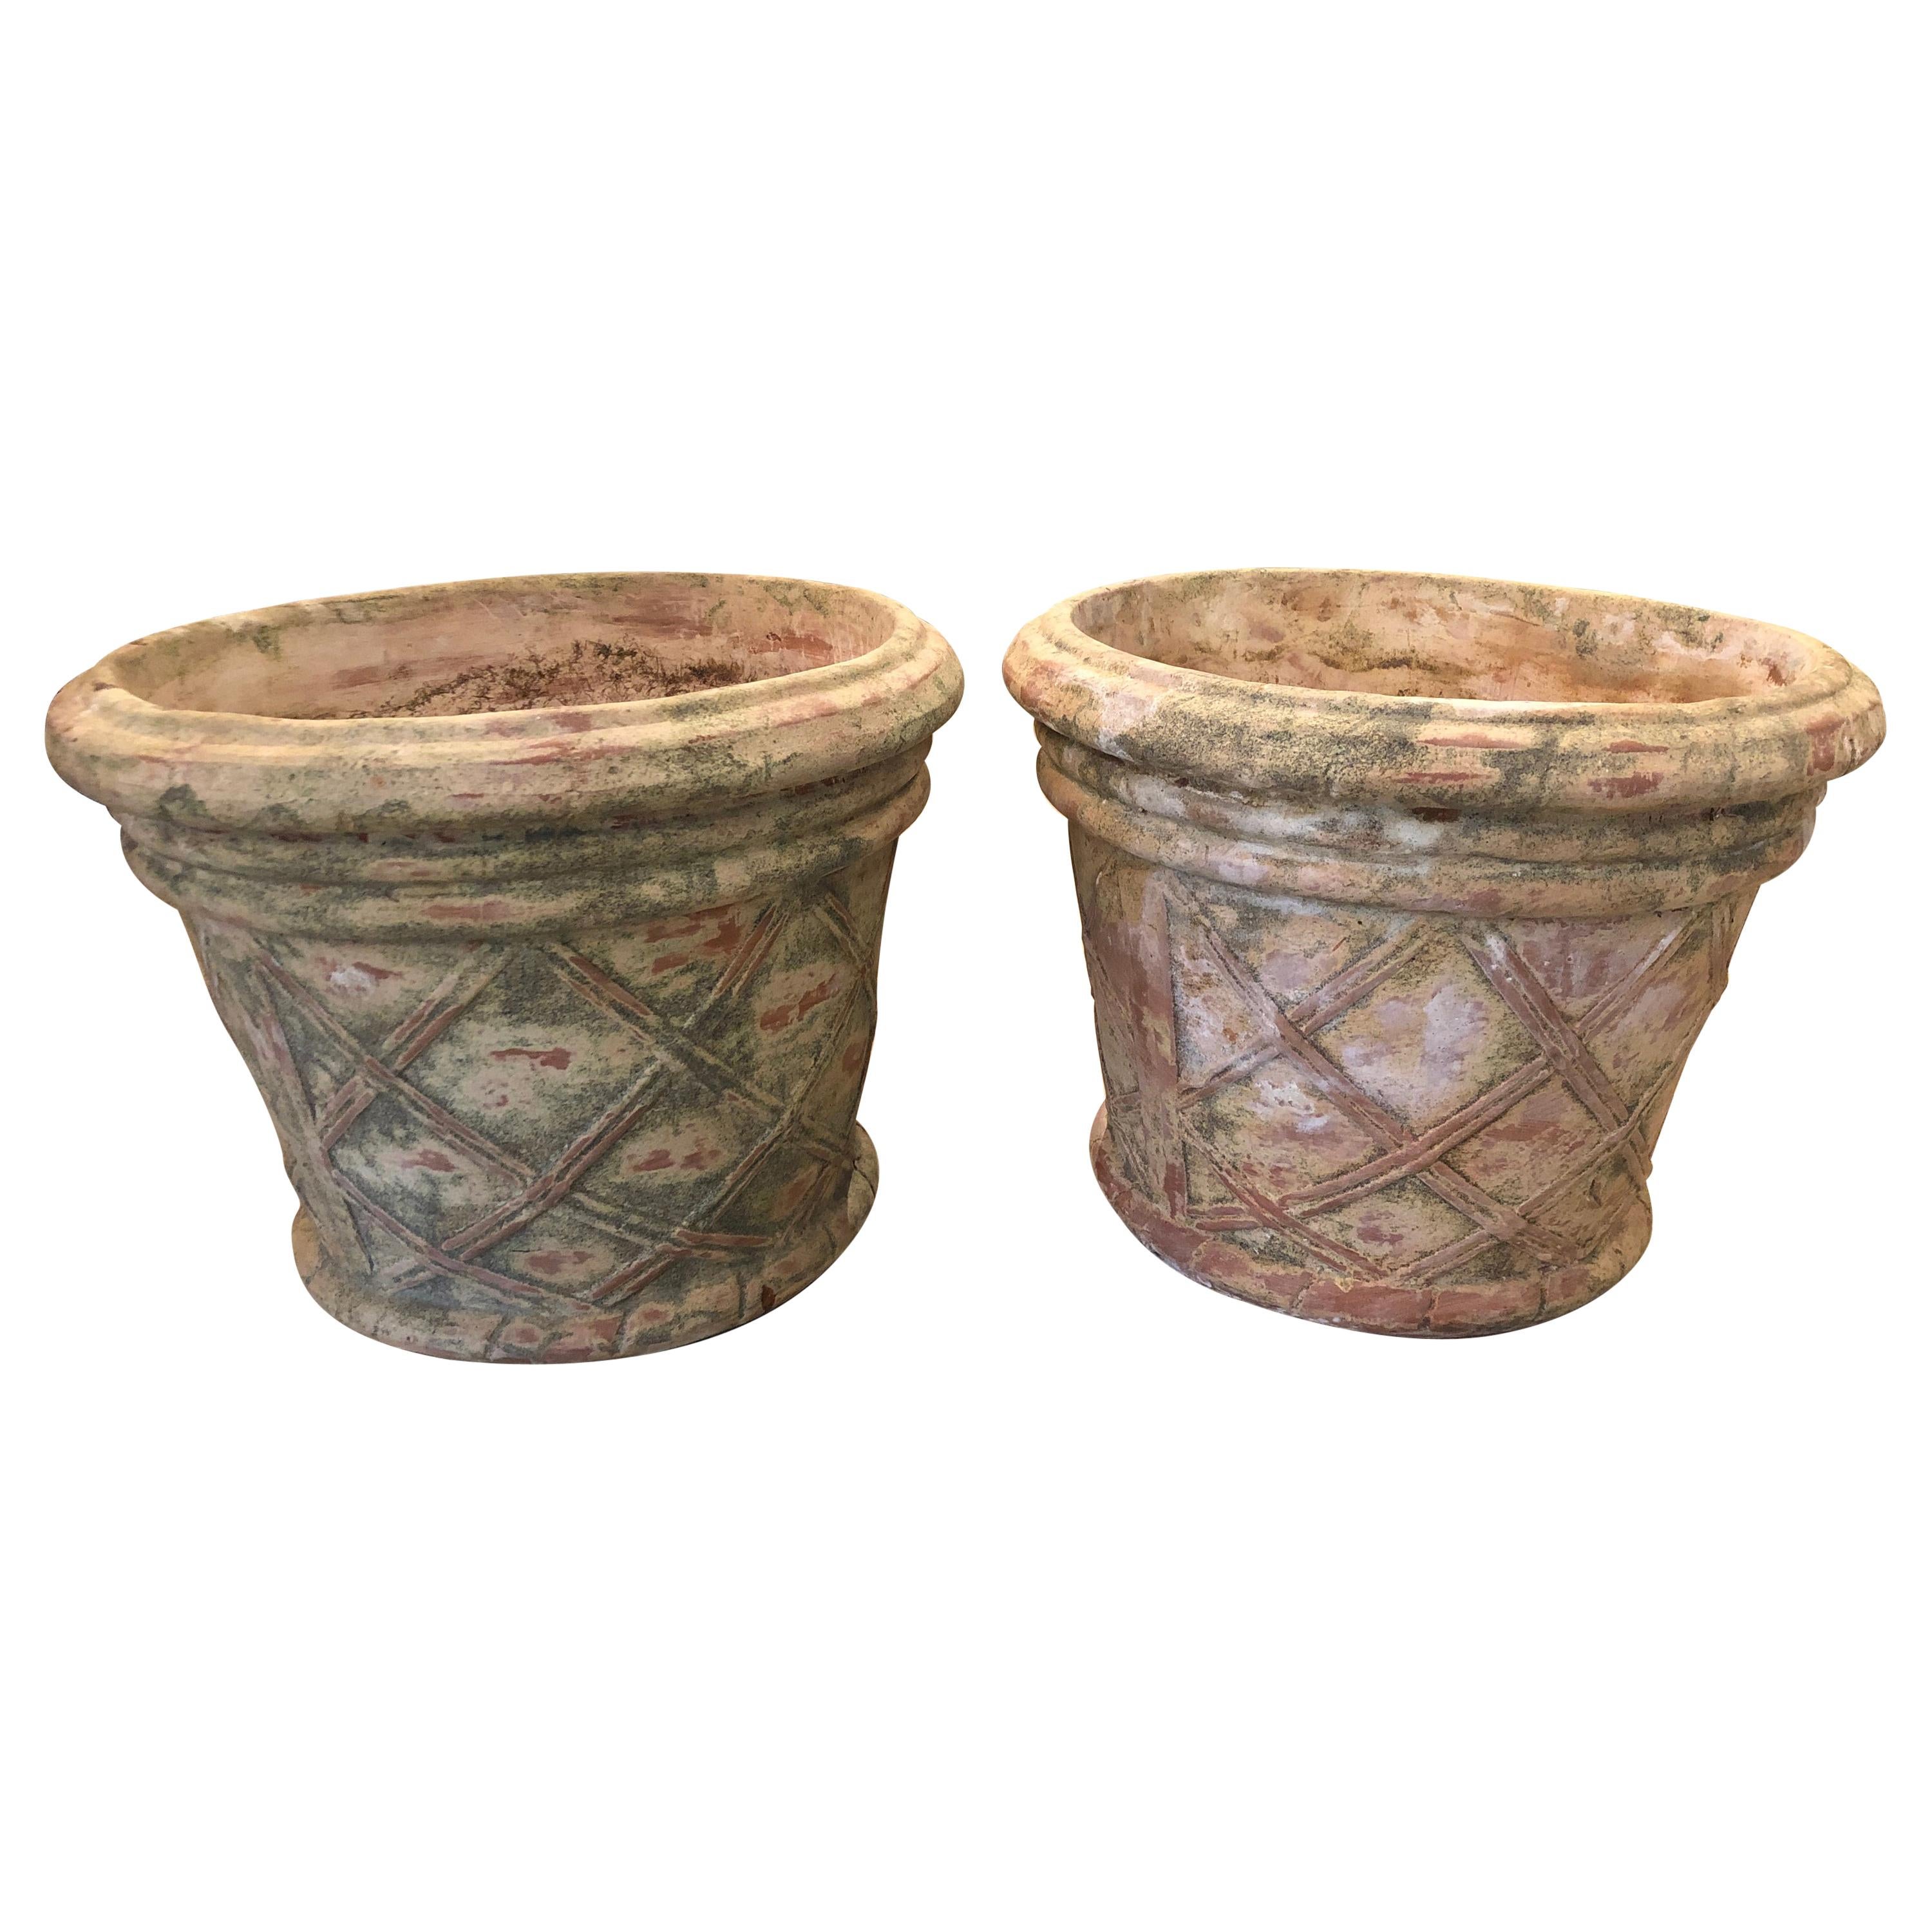 Handsome Pair of Lattice Decorated Terracotta Planters Urns